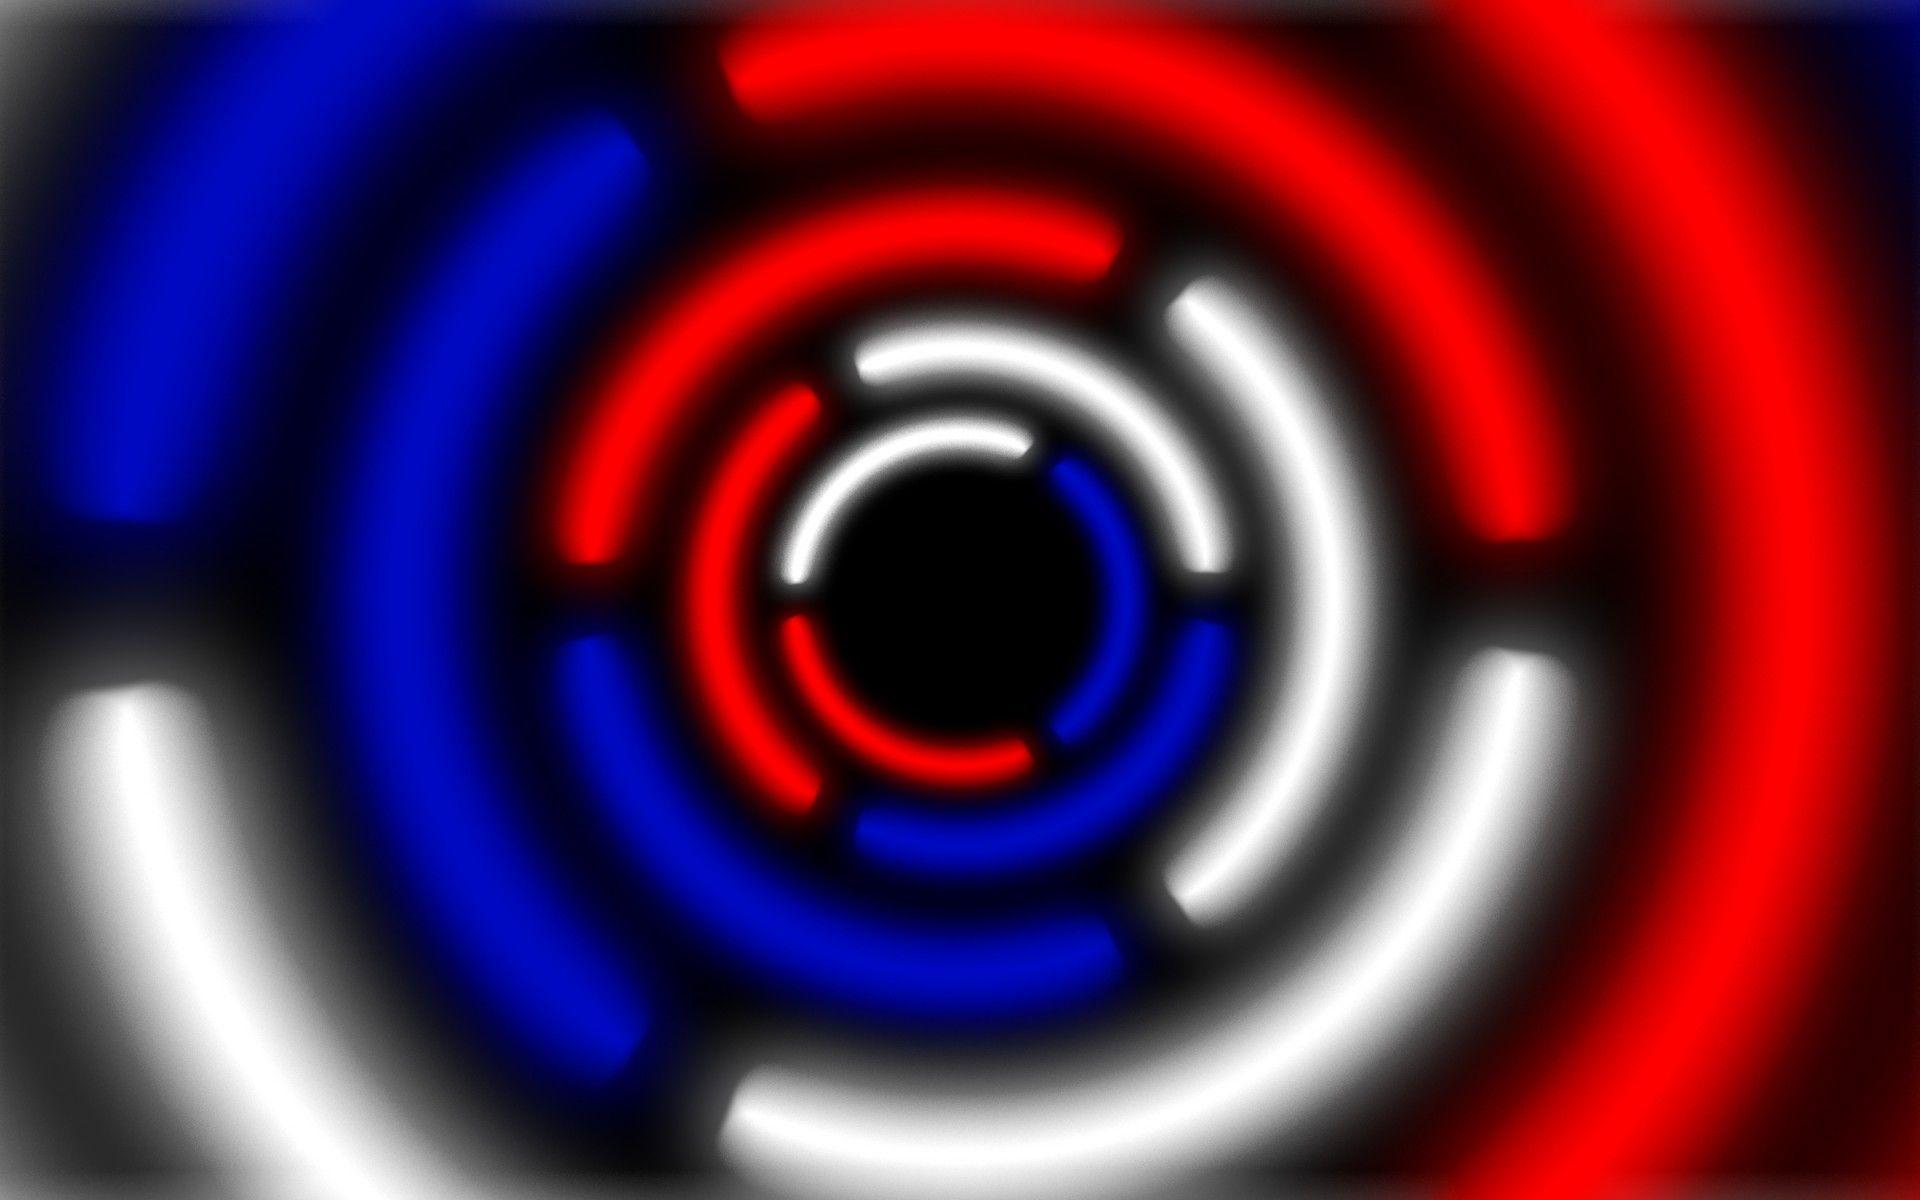 Red White and Blue Circle Logo - Circle krug Russia russia white blue red white blue red abstract ...